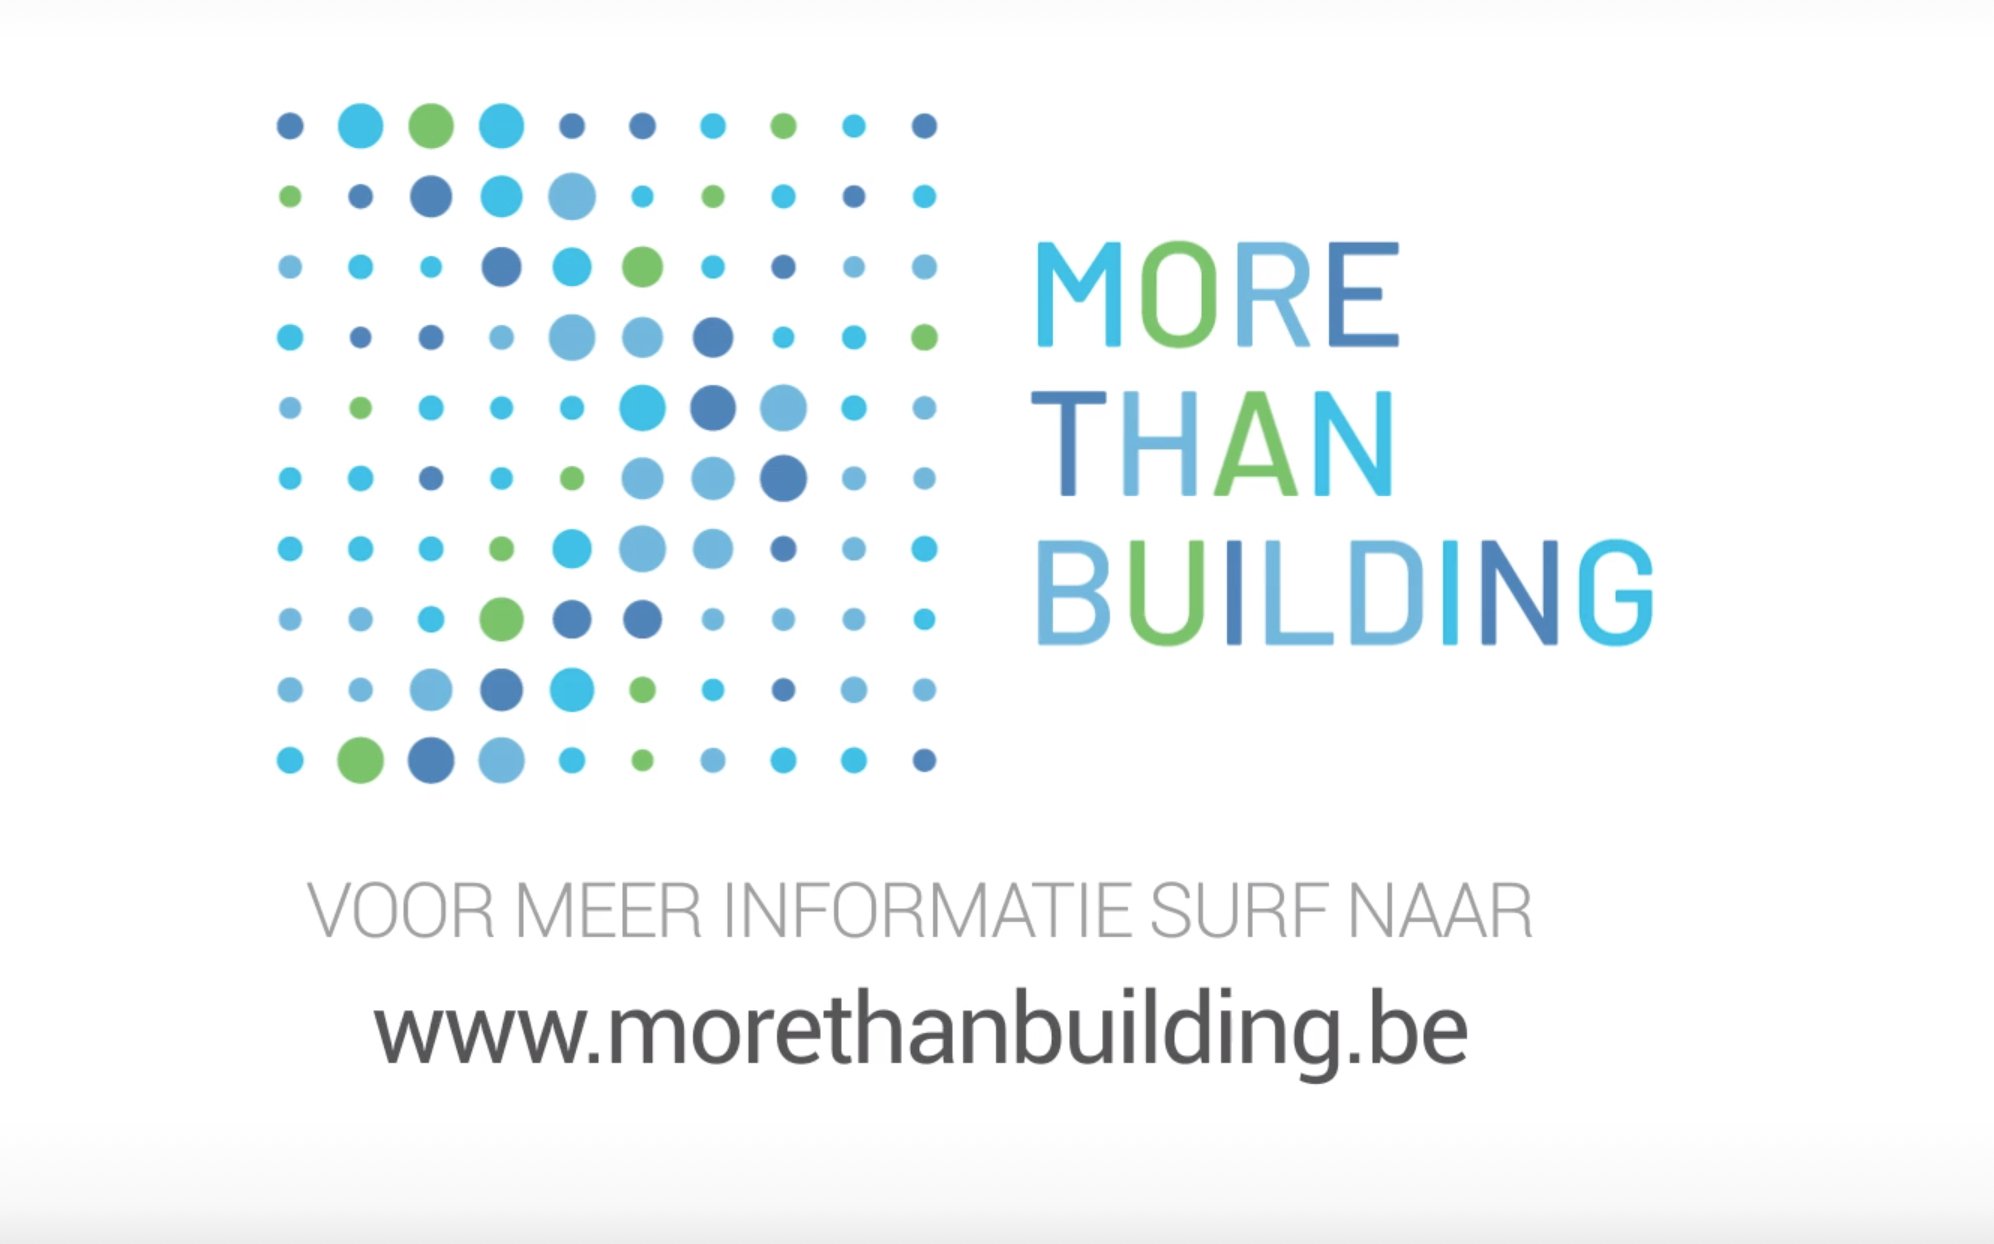 Grote bouwbedrijven werken aan imago met campagne More than Building